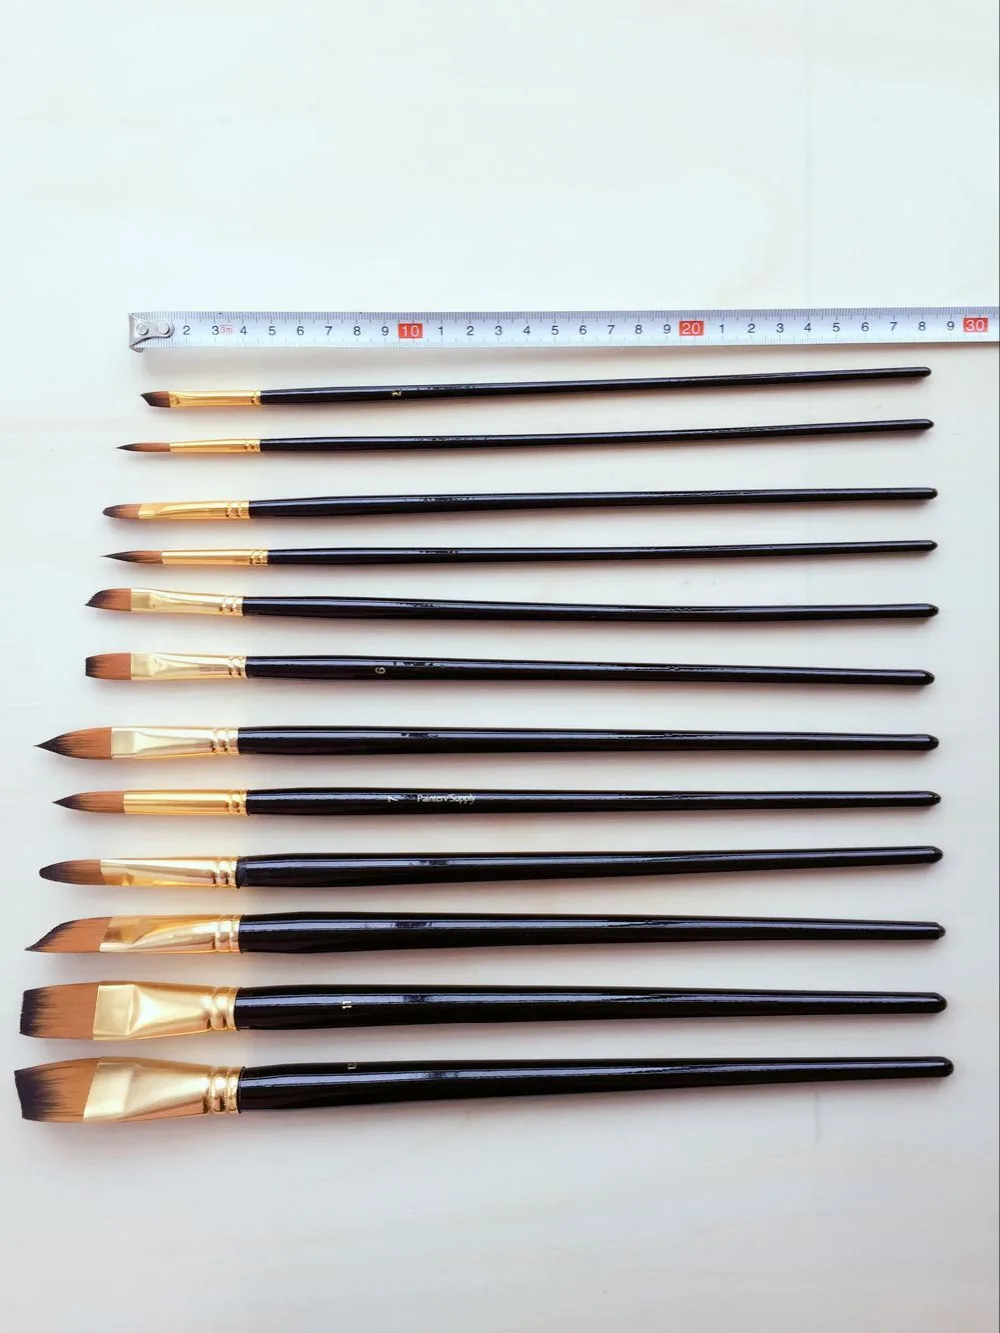 Высокое качество нейлон paintbrushes 12 шт./компл. и кисточки мешок акварель/Гуашь/акрил/кисти для рисования маслом книги по искусству принадлежности для рисования